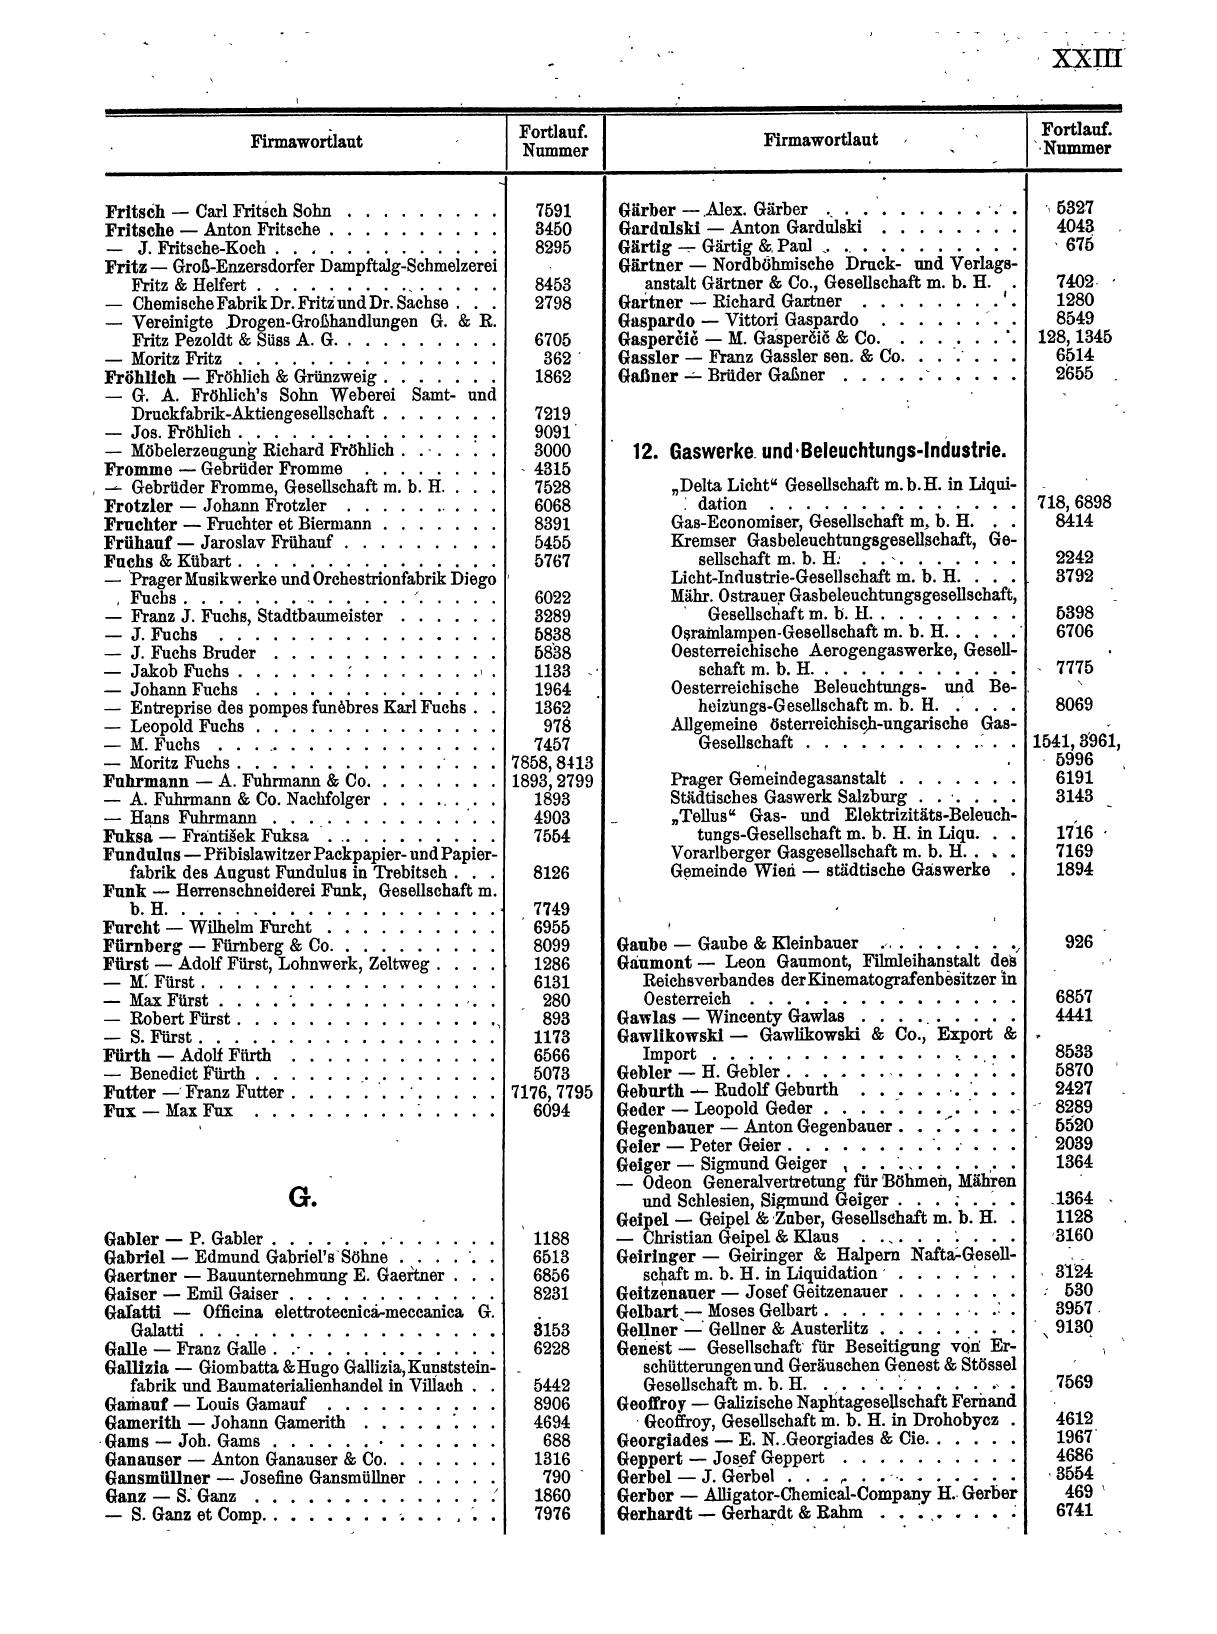 Zentralblatt für die Eintragungen in das Handelsregister 1913, Teil 1 - Seite 31